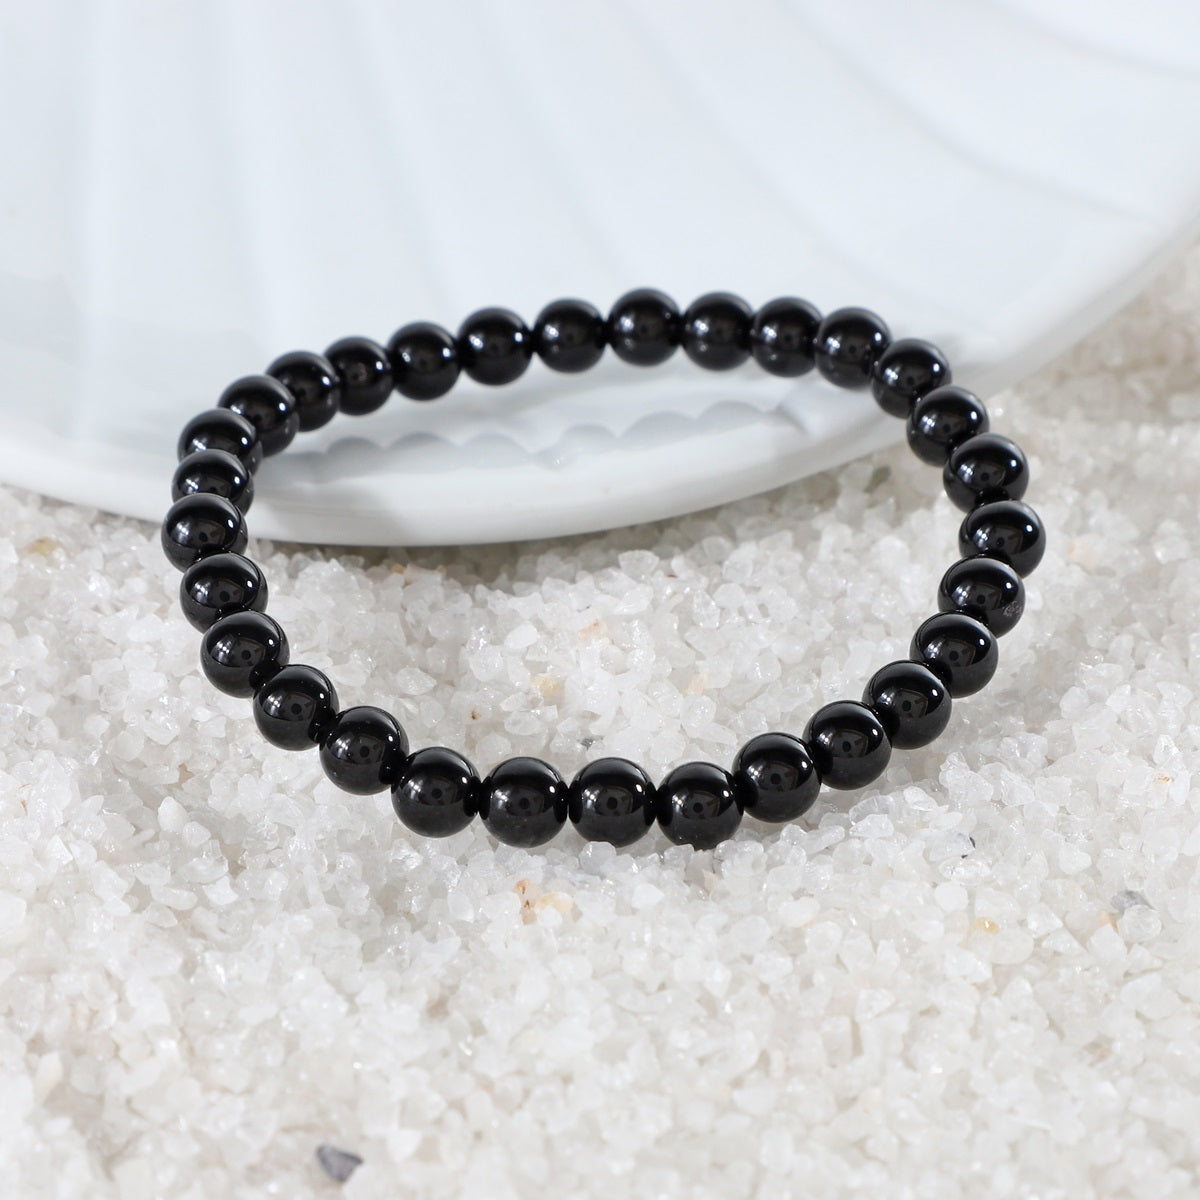 Stylish and versatile - Black Onyx Bracelet enhancing any ensemble with its elegant design and empowering energy